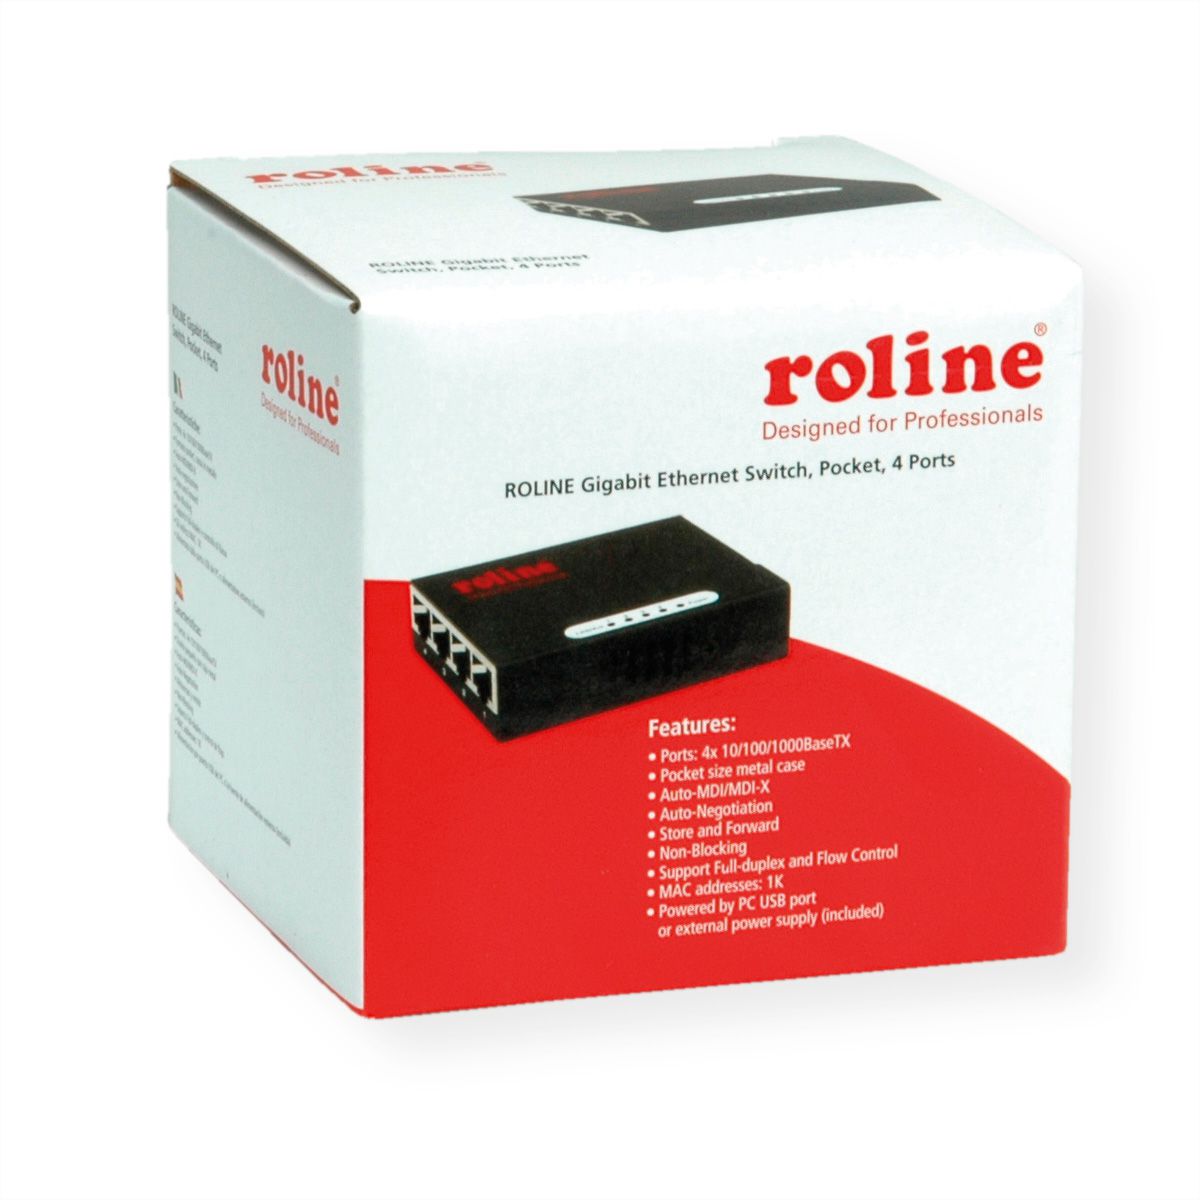 ROLINE Injecteur PoE Gigabit Ethernet, 4 ports - SECOMP France